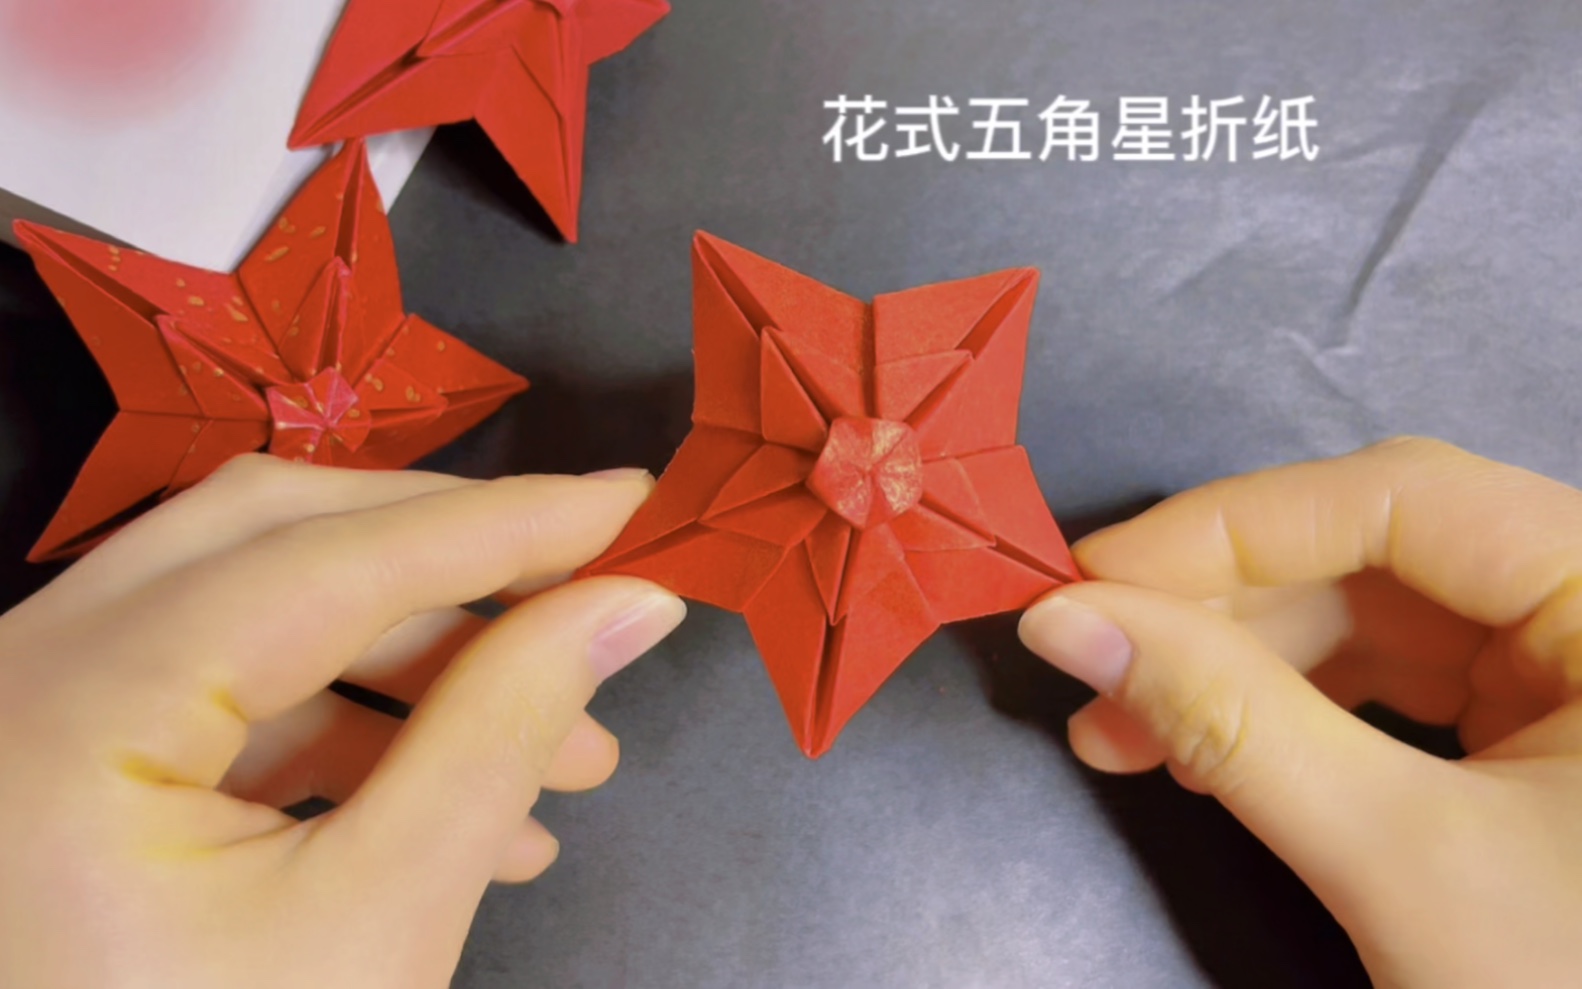 星辰大海,为你带来!花式五角形折纸教程